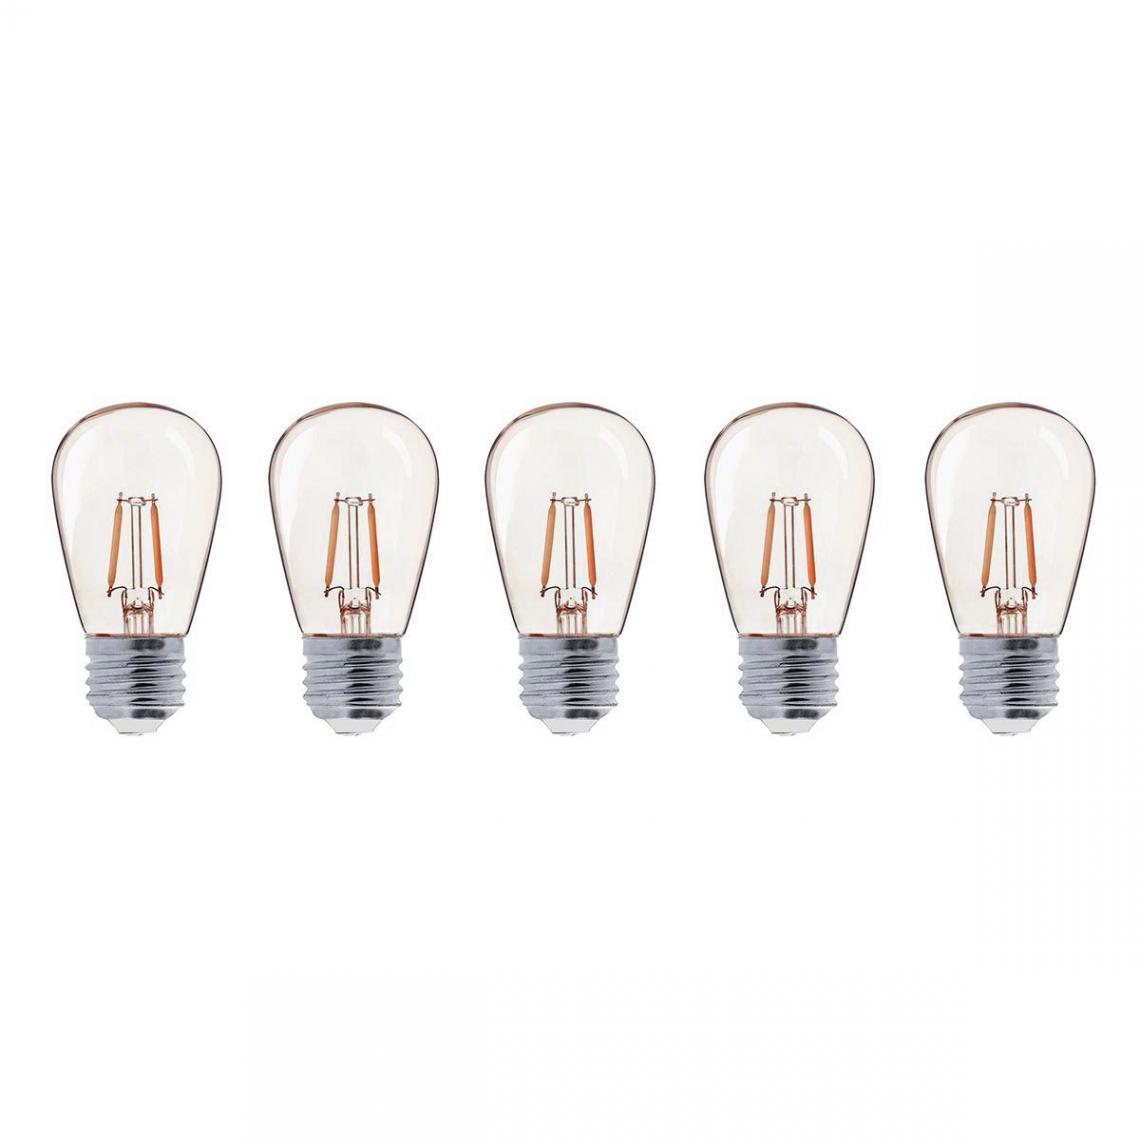 Lumisky - Lot de 5 ampoules vintages PARTY BULB FILAMENT Blanc Aluminium E27 - Ampoules LED